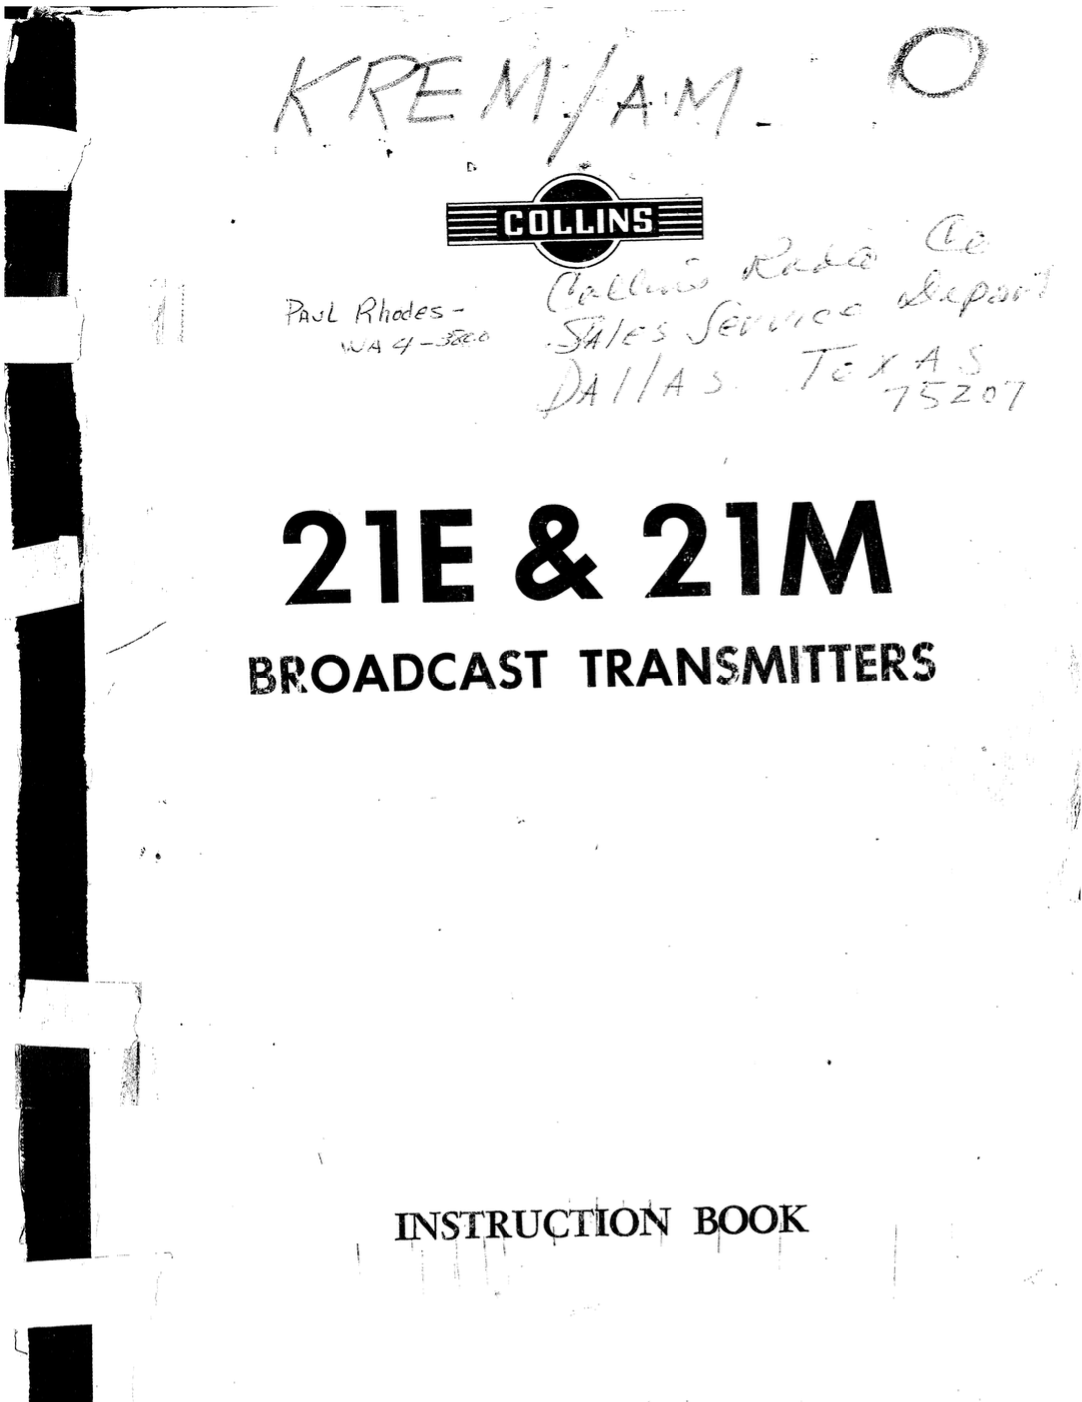 Collins 21E AM Transmitter - Instruction Book